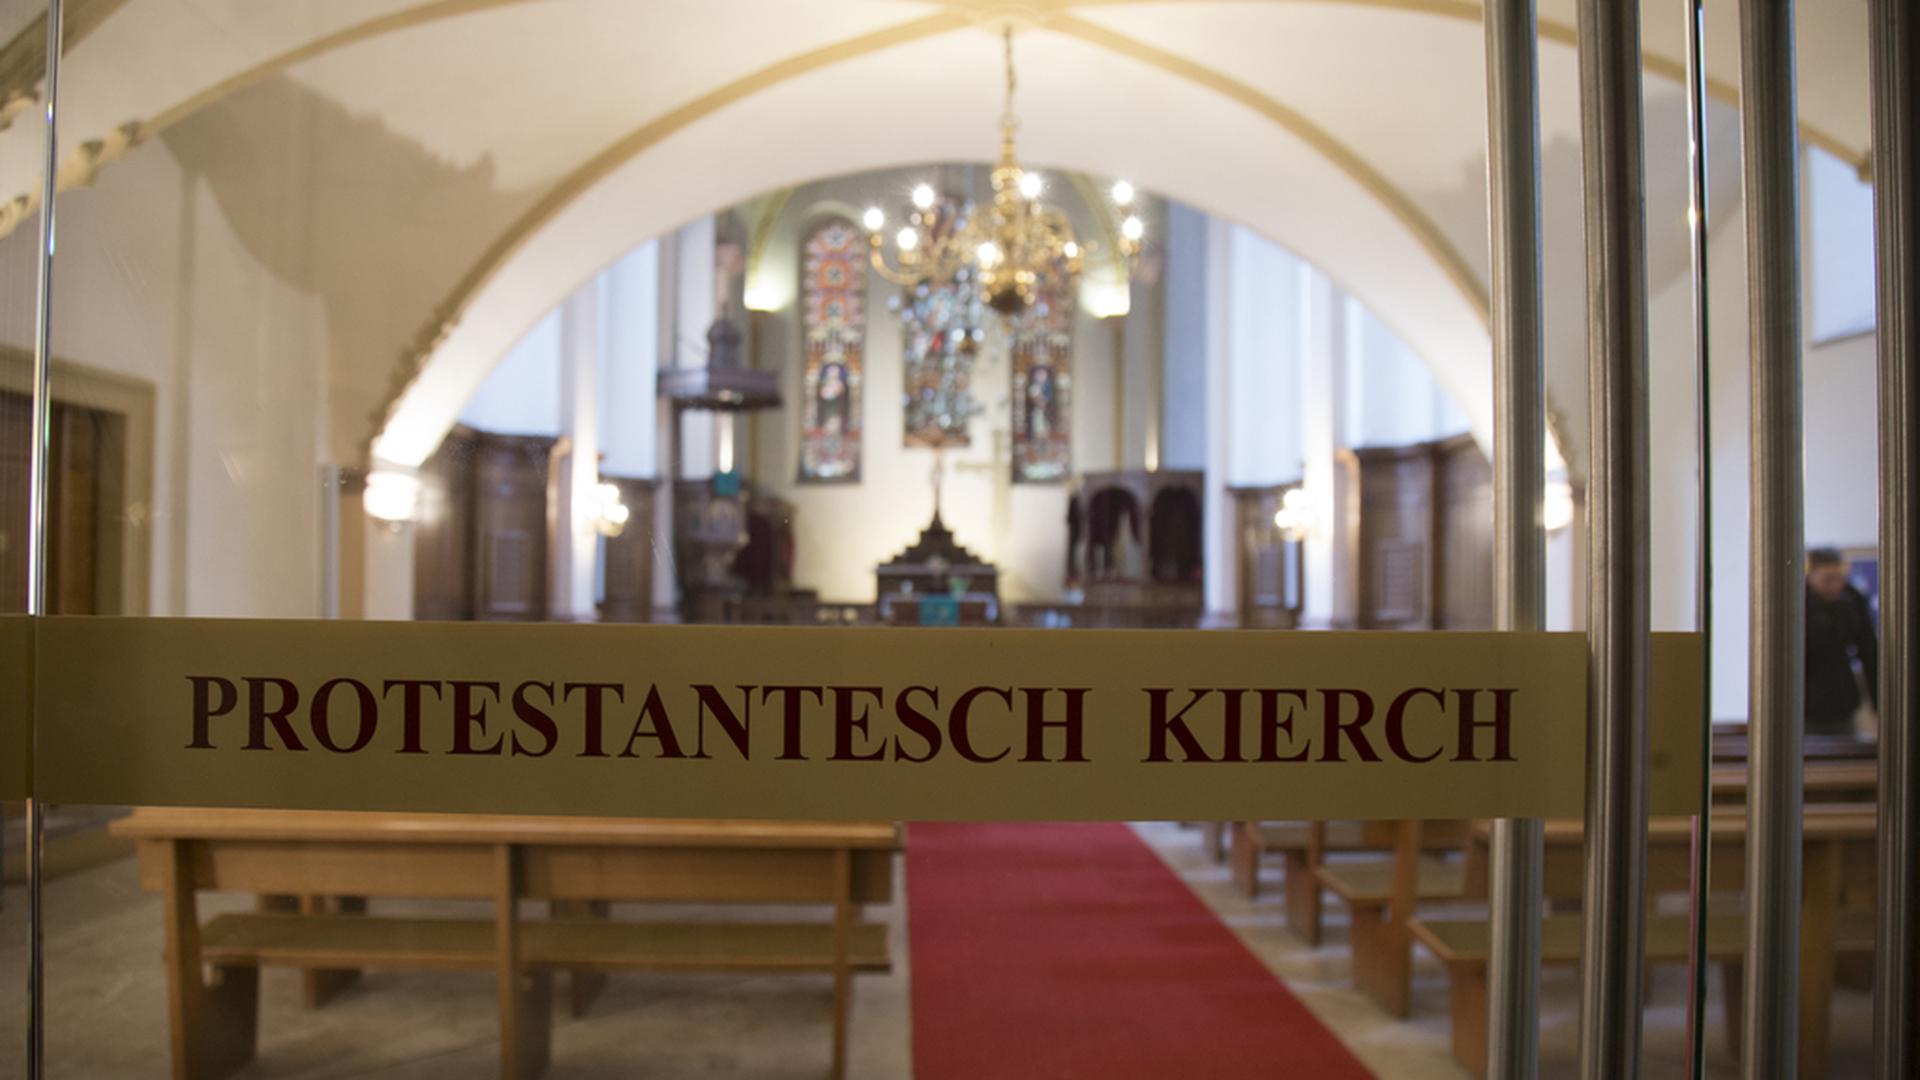 L'Eglise protestante du Luxembourg représente l'ensemble des communautés protestantes présentes sur le territoire